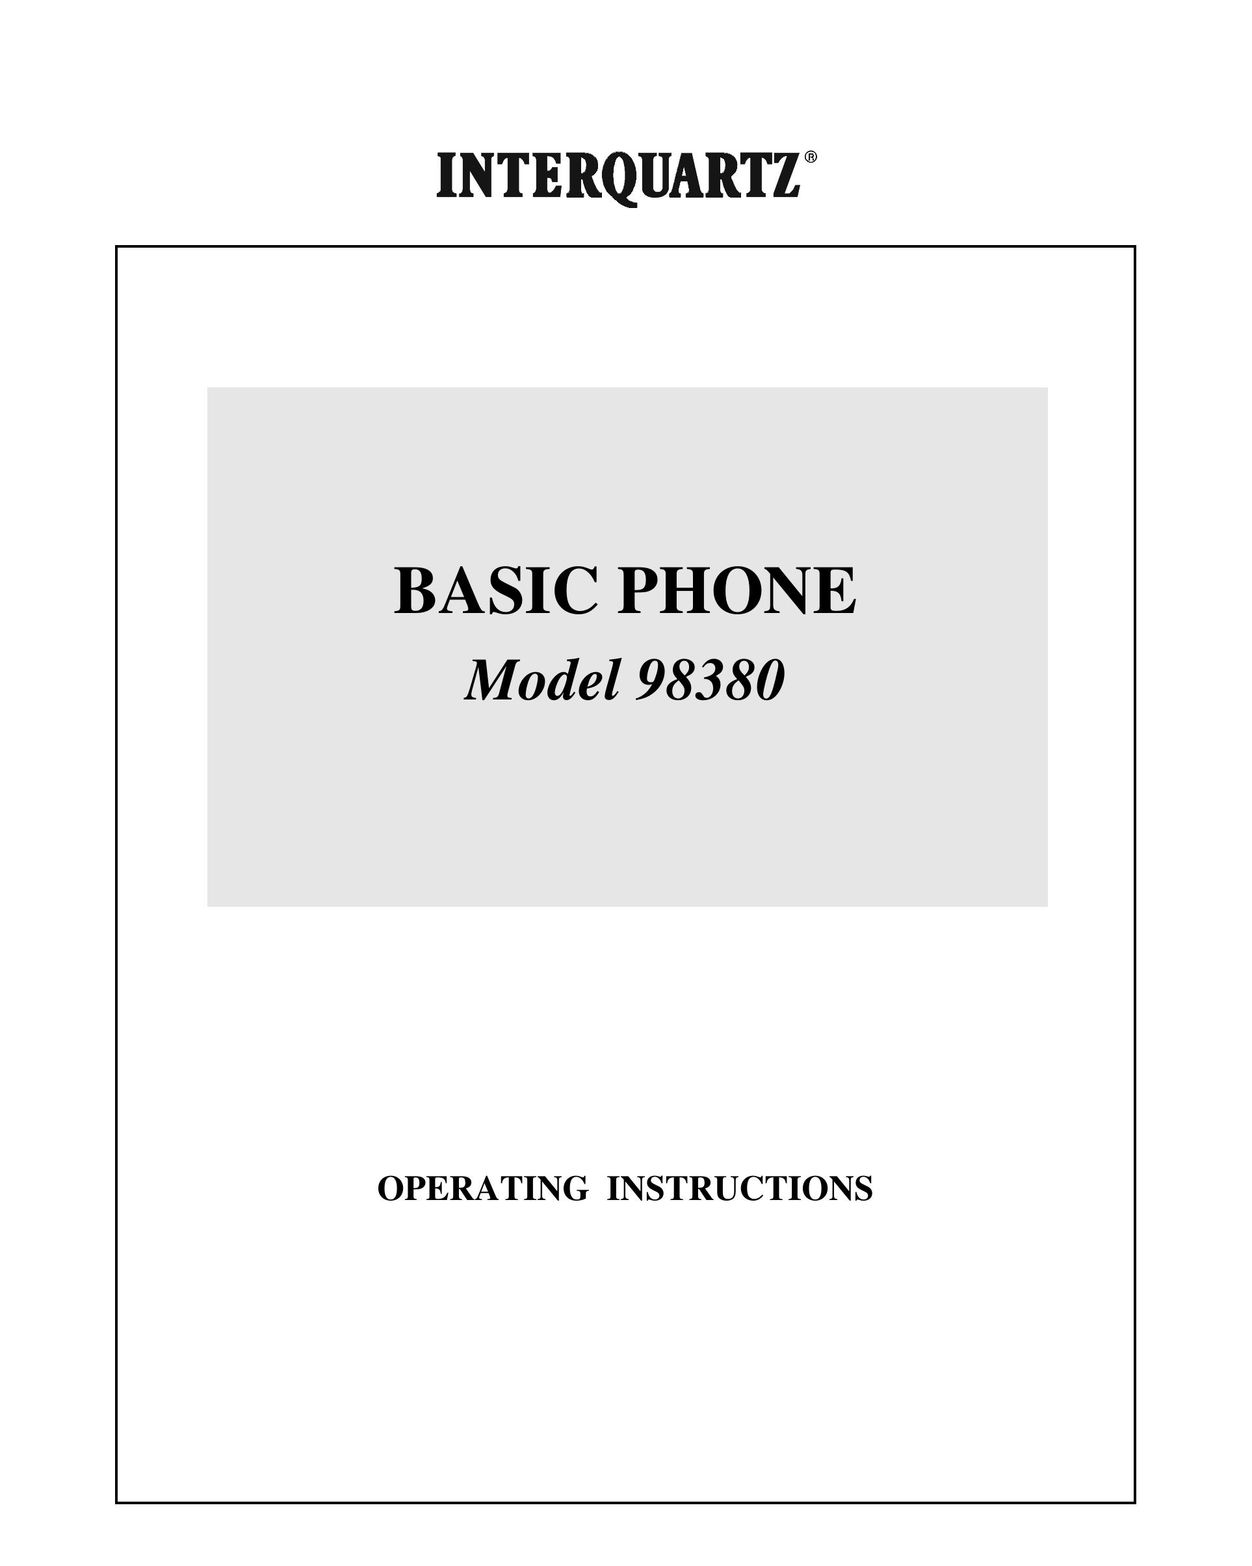 Interquartz 98380 Telephone User Manual